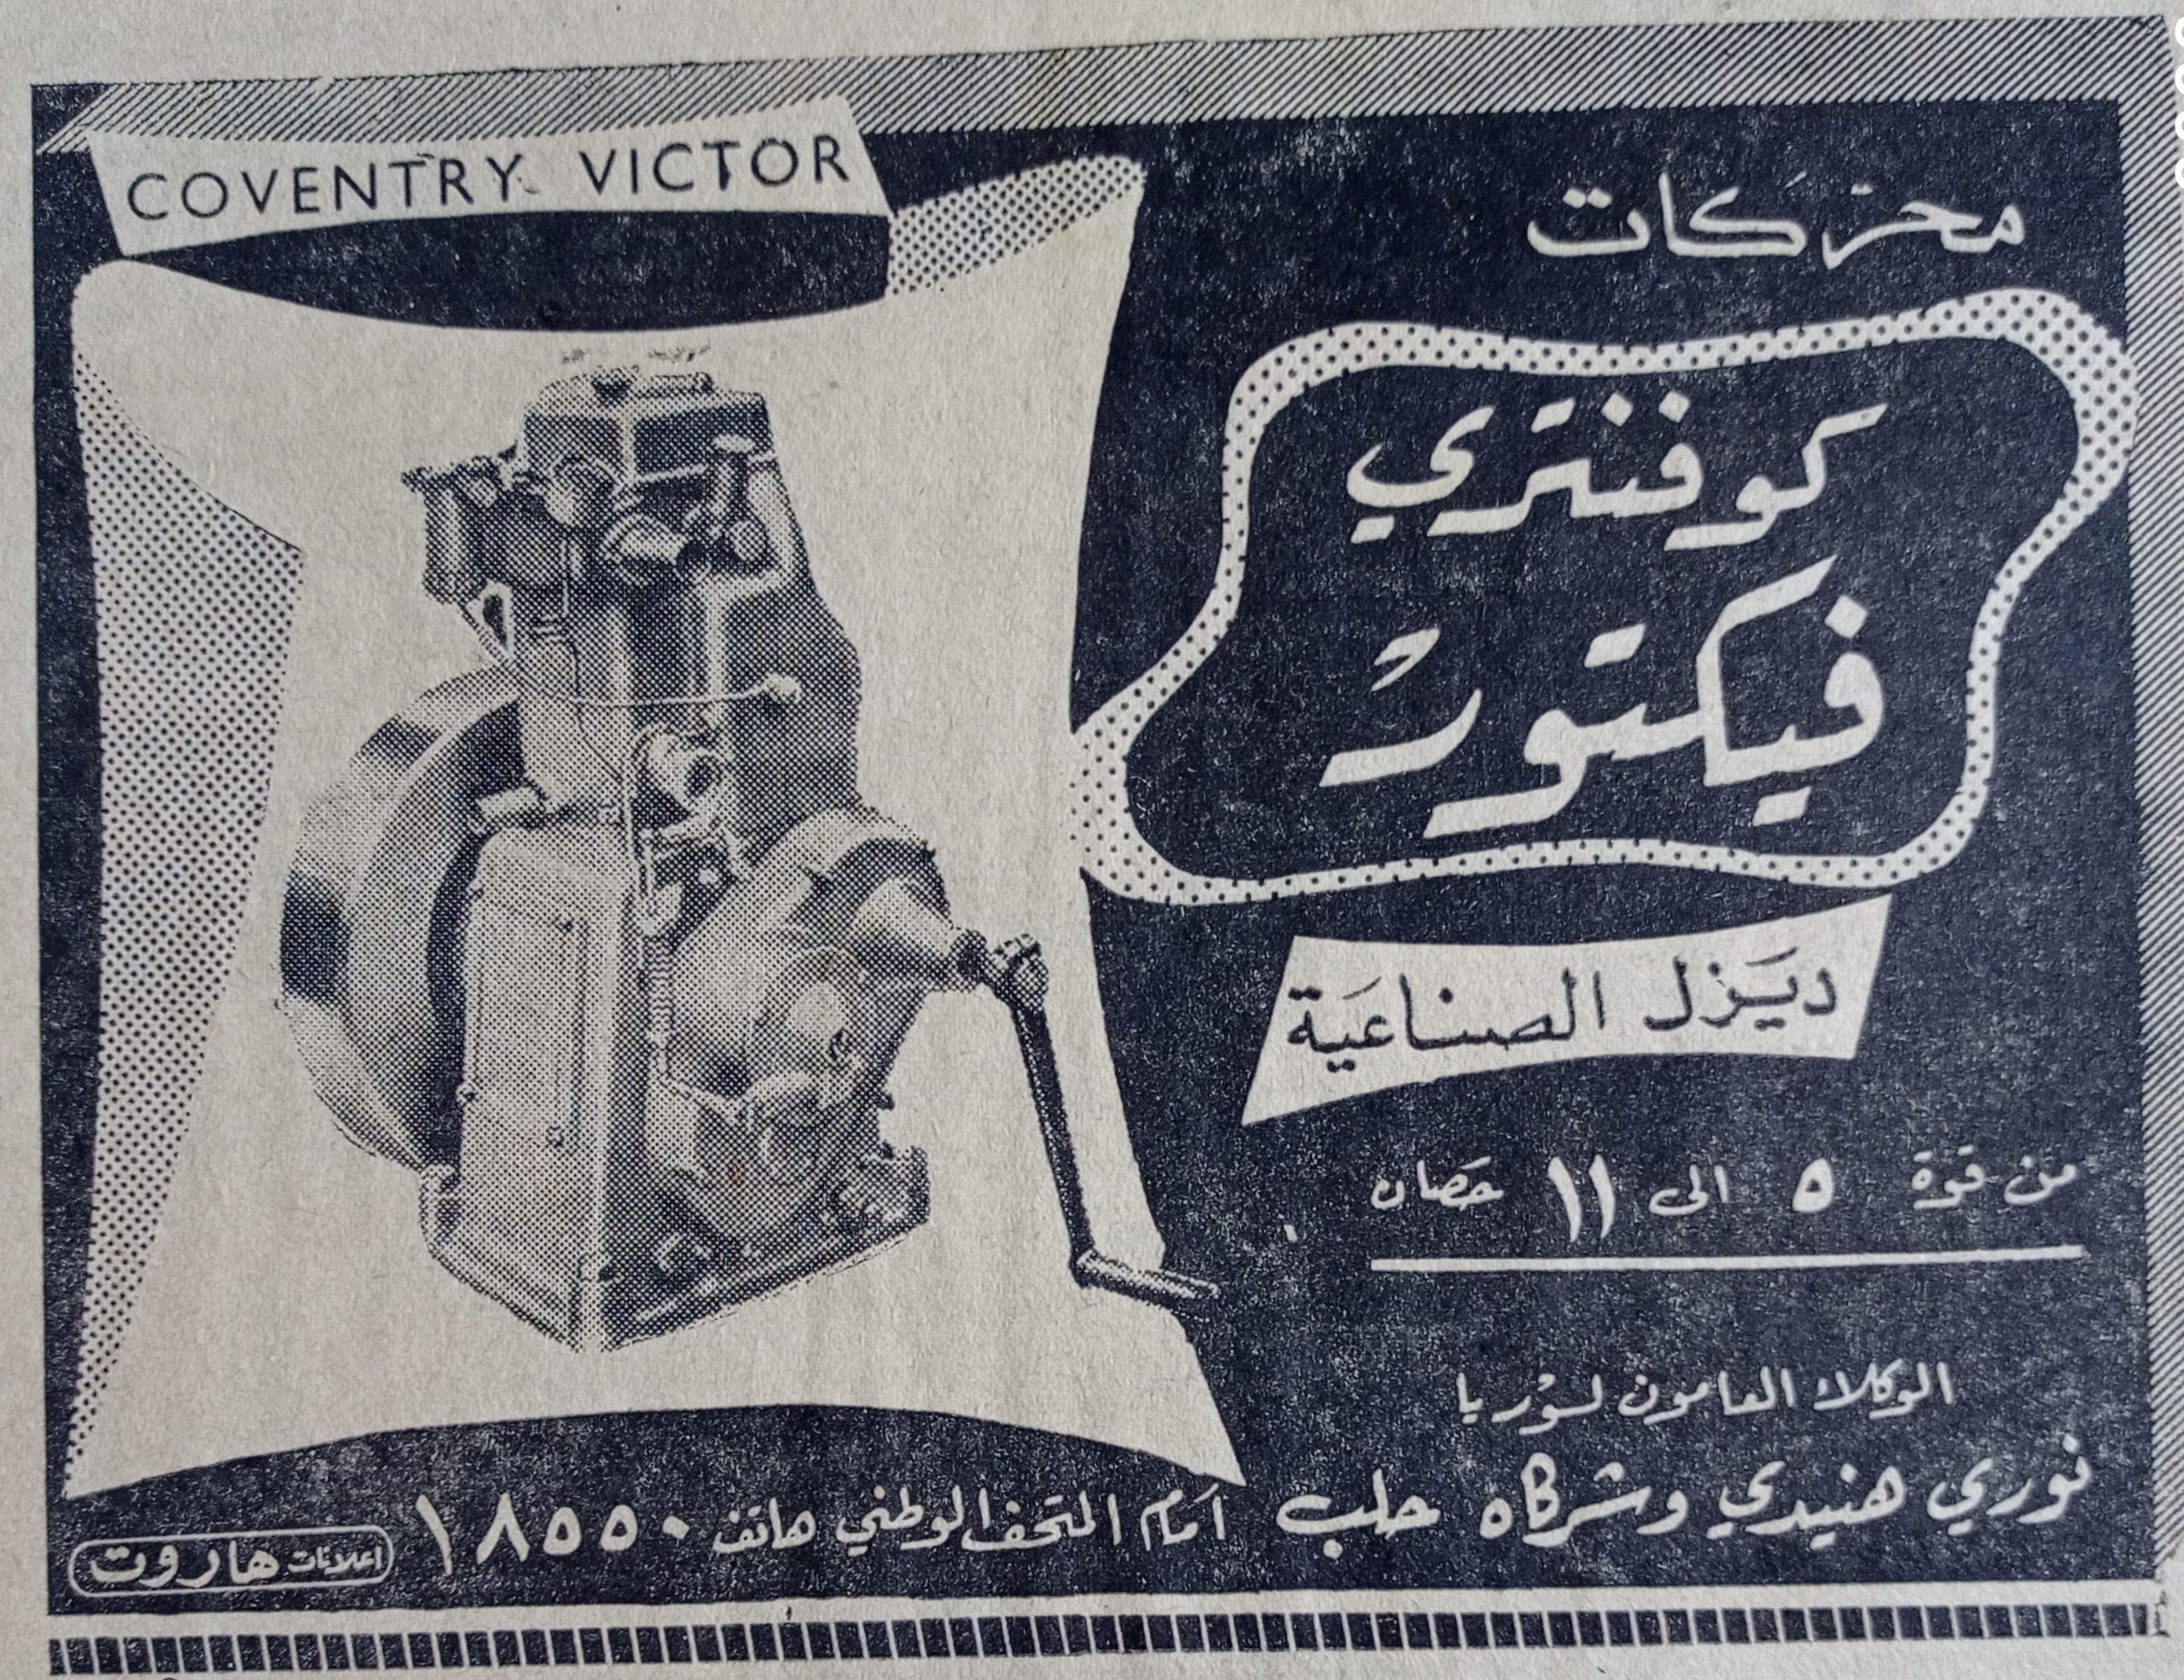 التاريخ السوري المعاصر - اعلان عن محركات كوفنتري فيكتور ديزل الصناعية في حلب عام 1956 